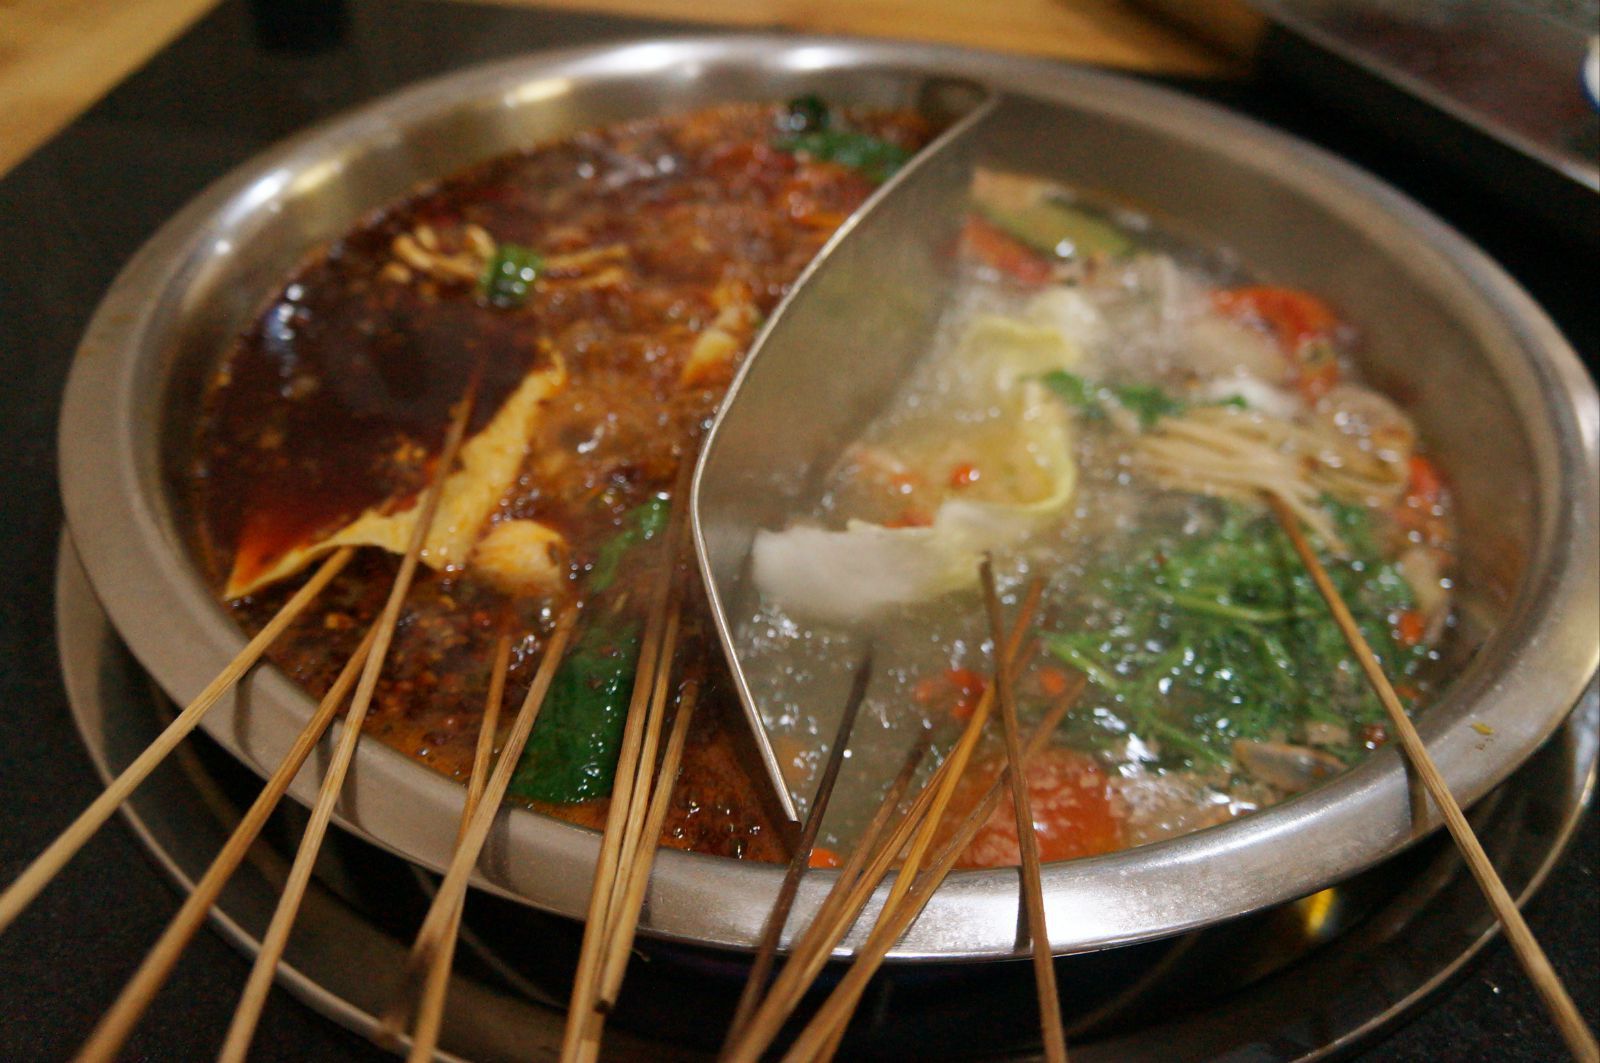 玉林串串香是热锅串串,麻辣烫和火锅的结合,好吃~ 晚餐